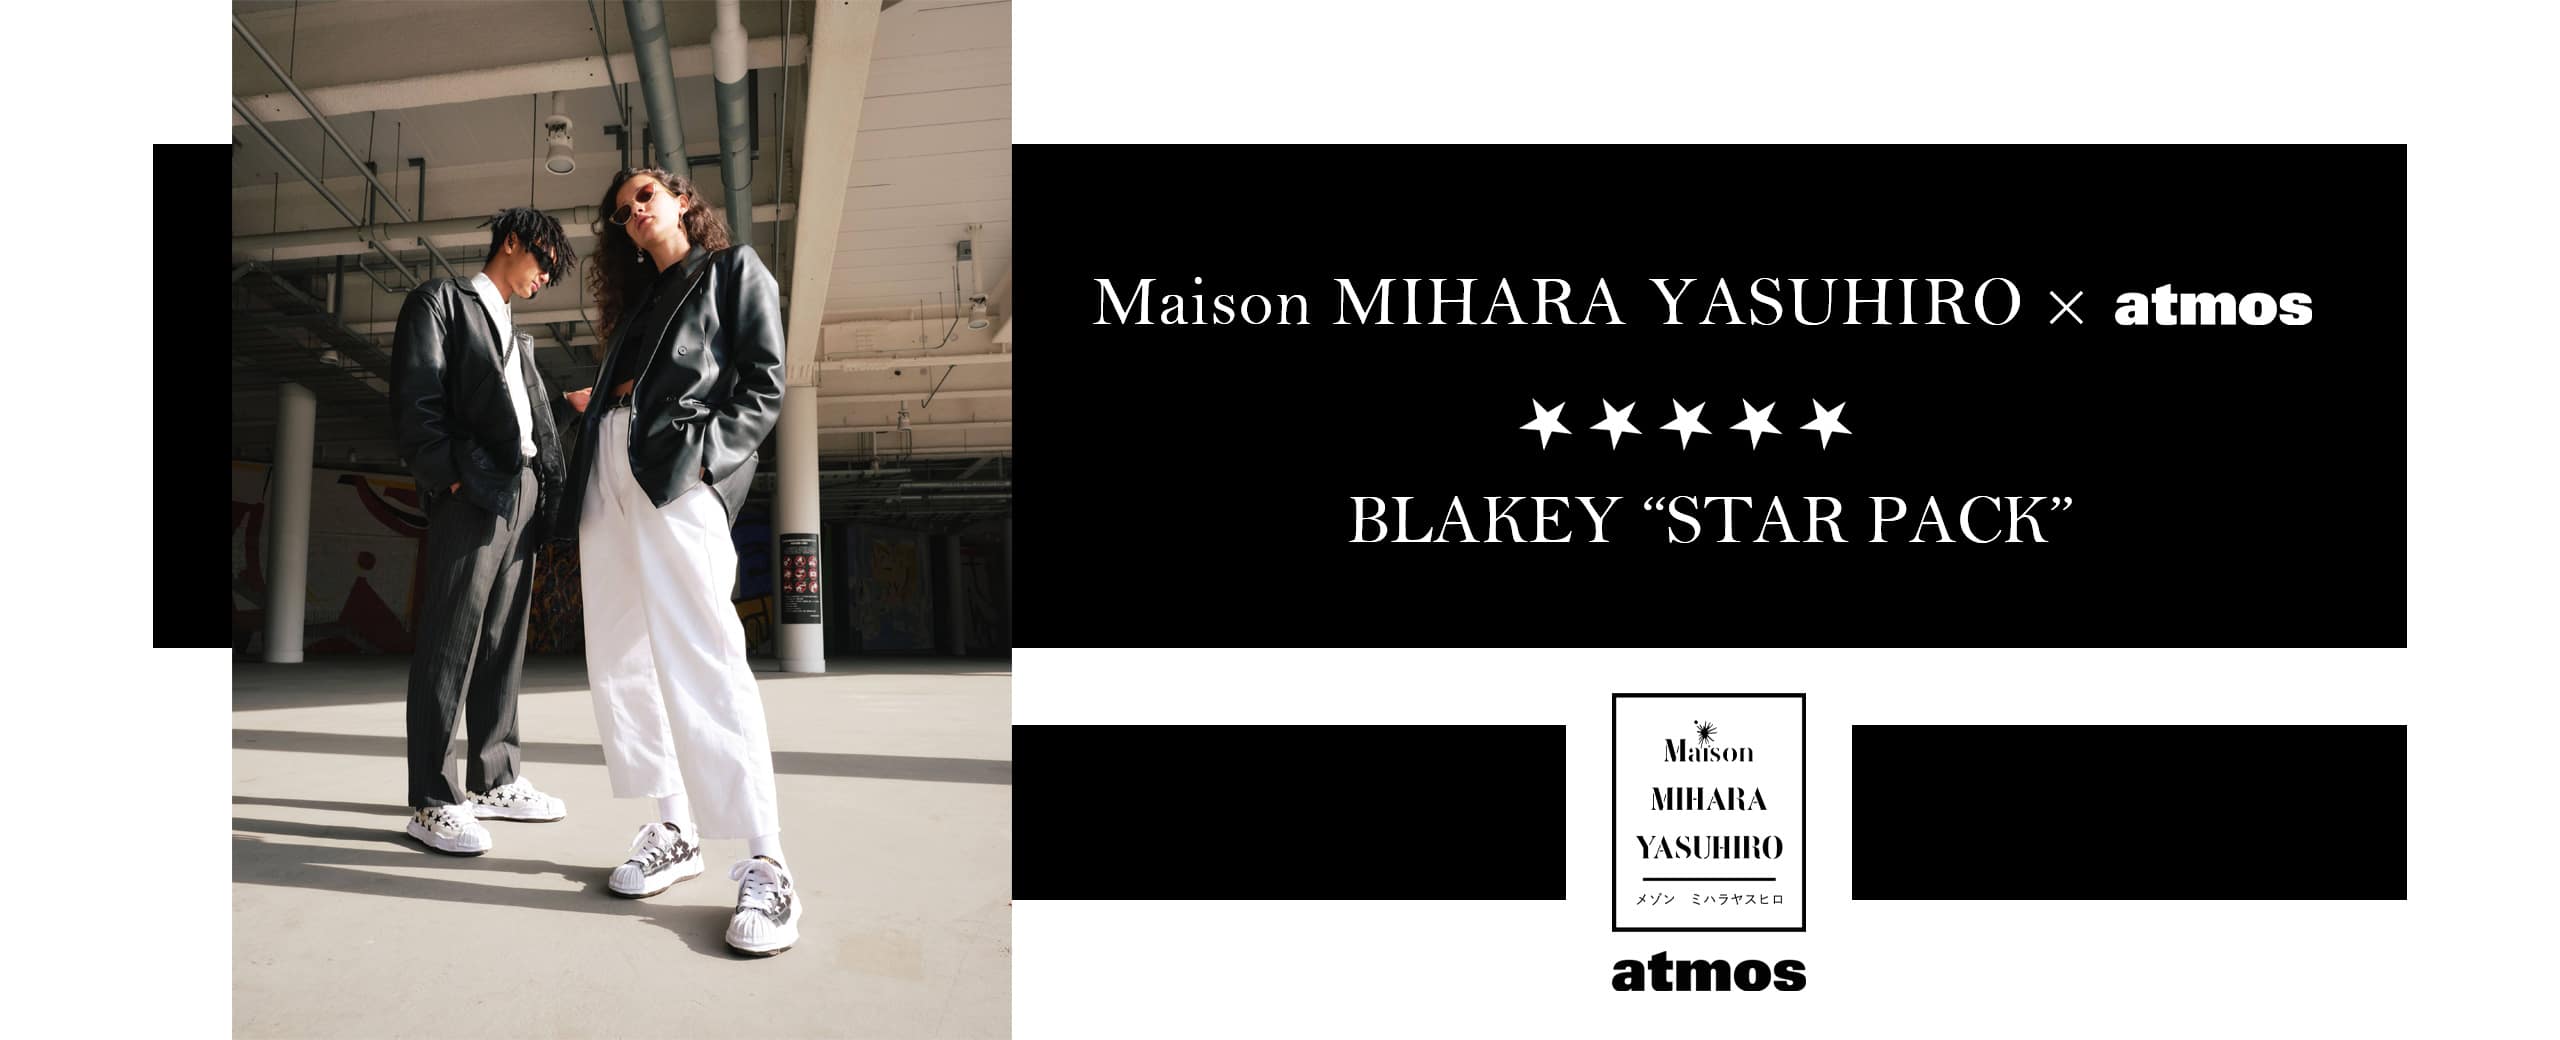 "Maison MIHARA YASUHIRO × atmos BLAKEY “STAR PACK”"